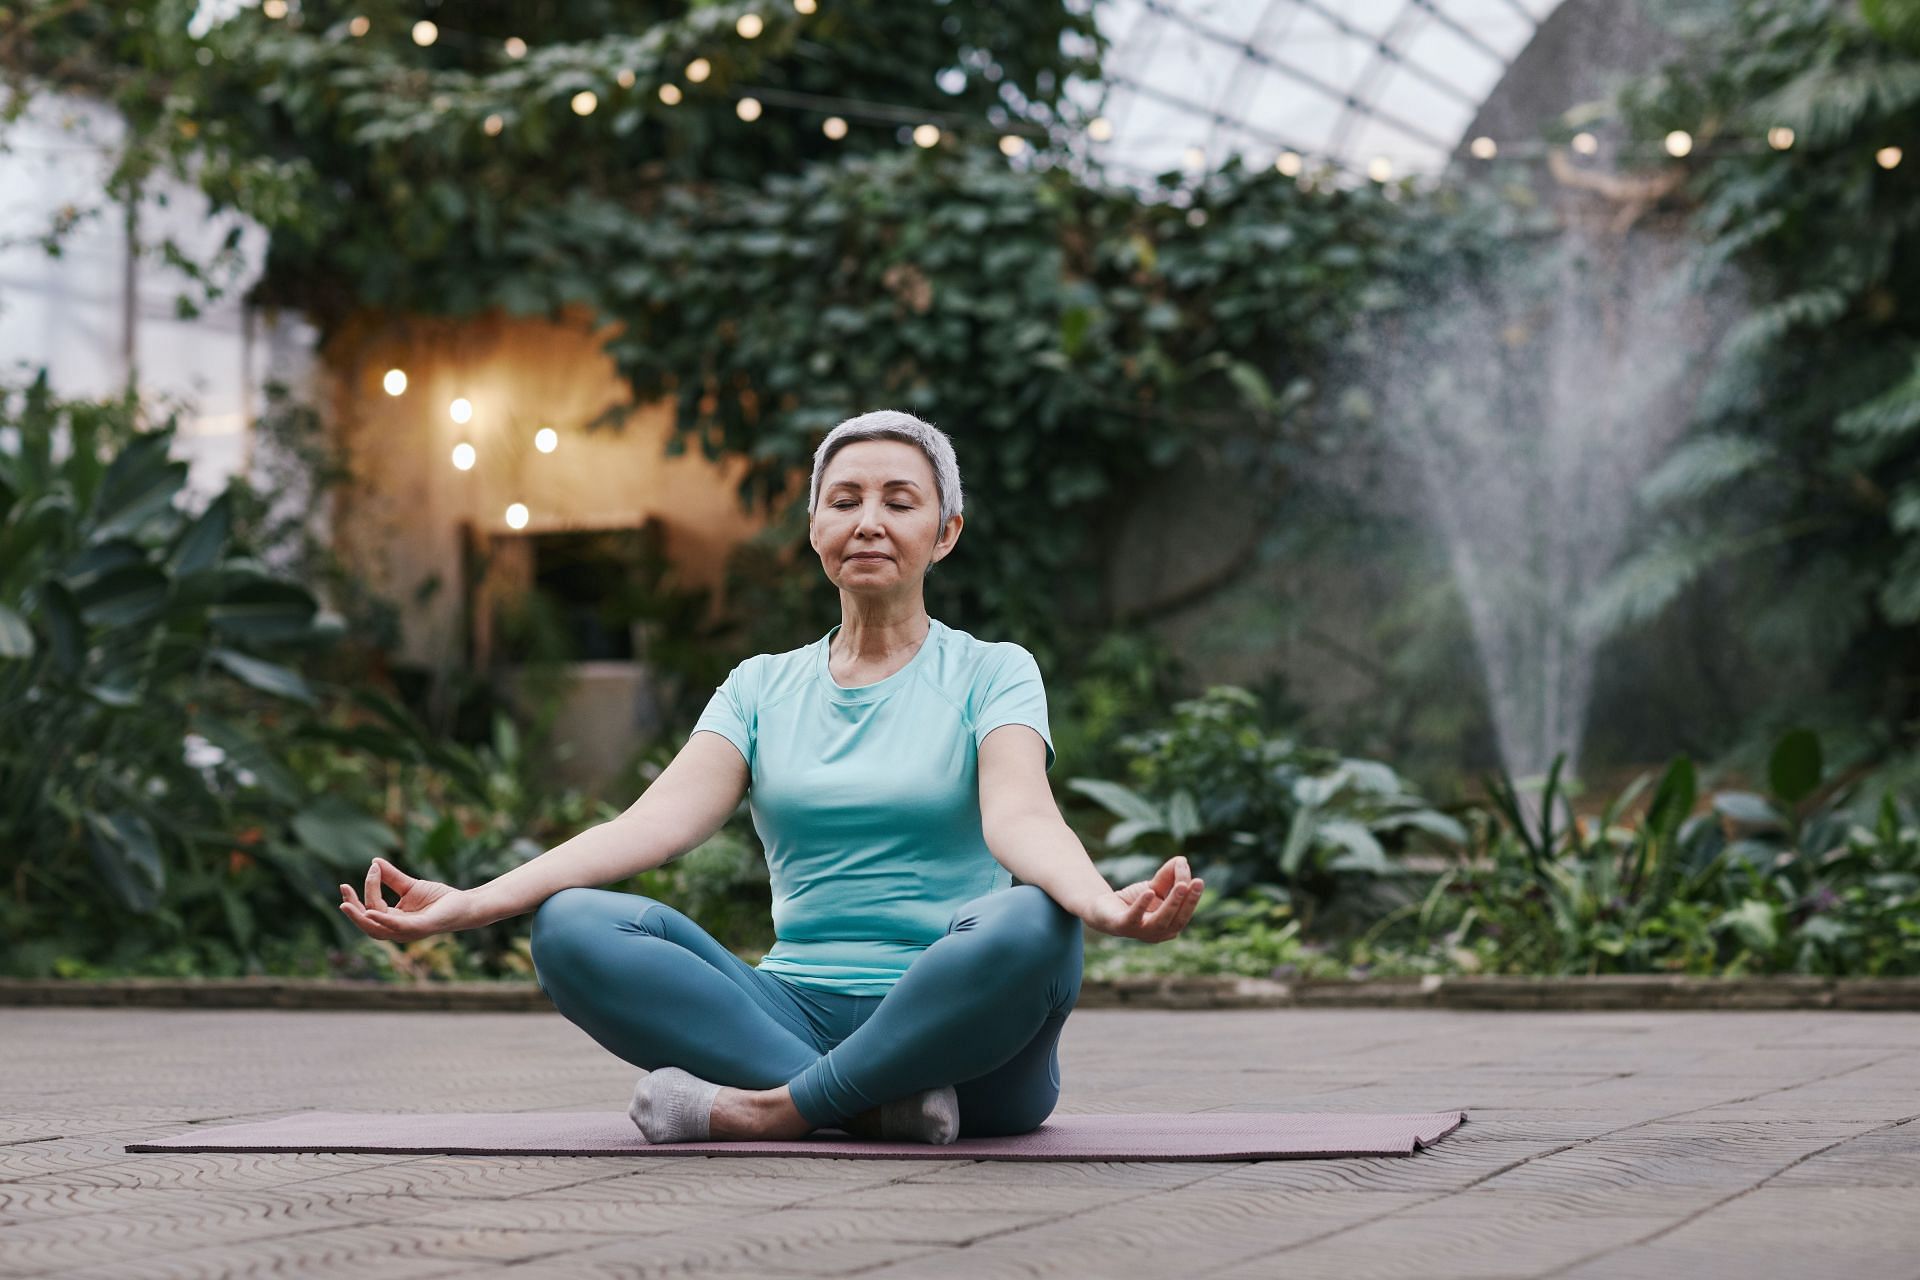 Yoga can help you attain inner peace (Image via Pexels @Marcus Aurelius)